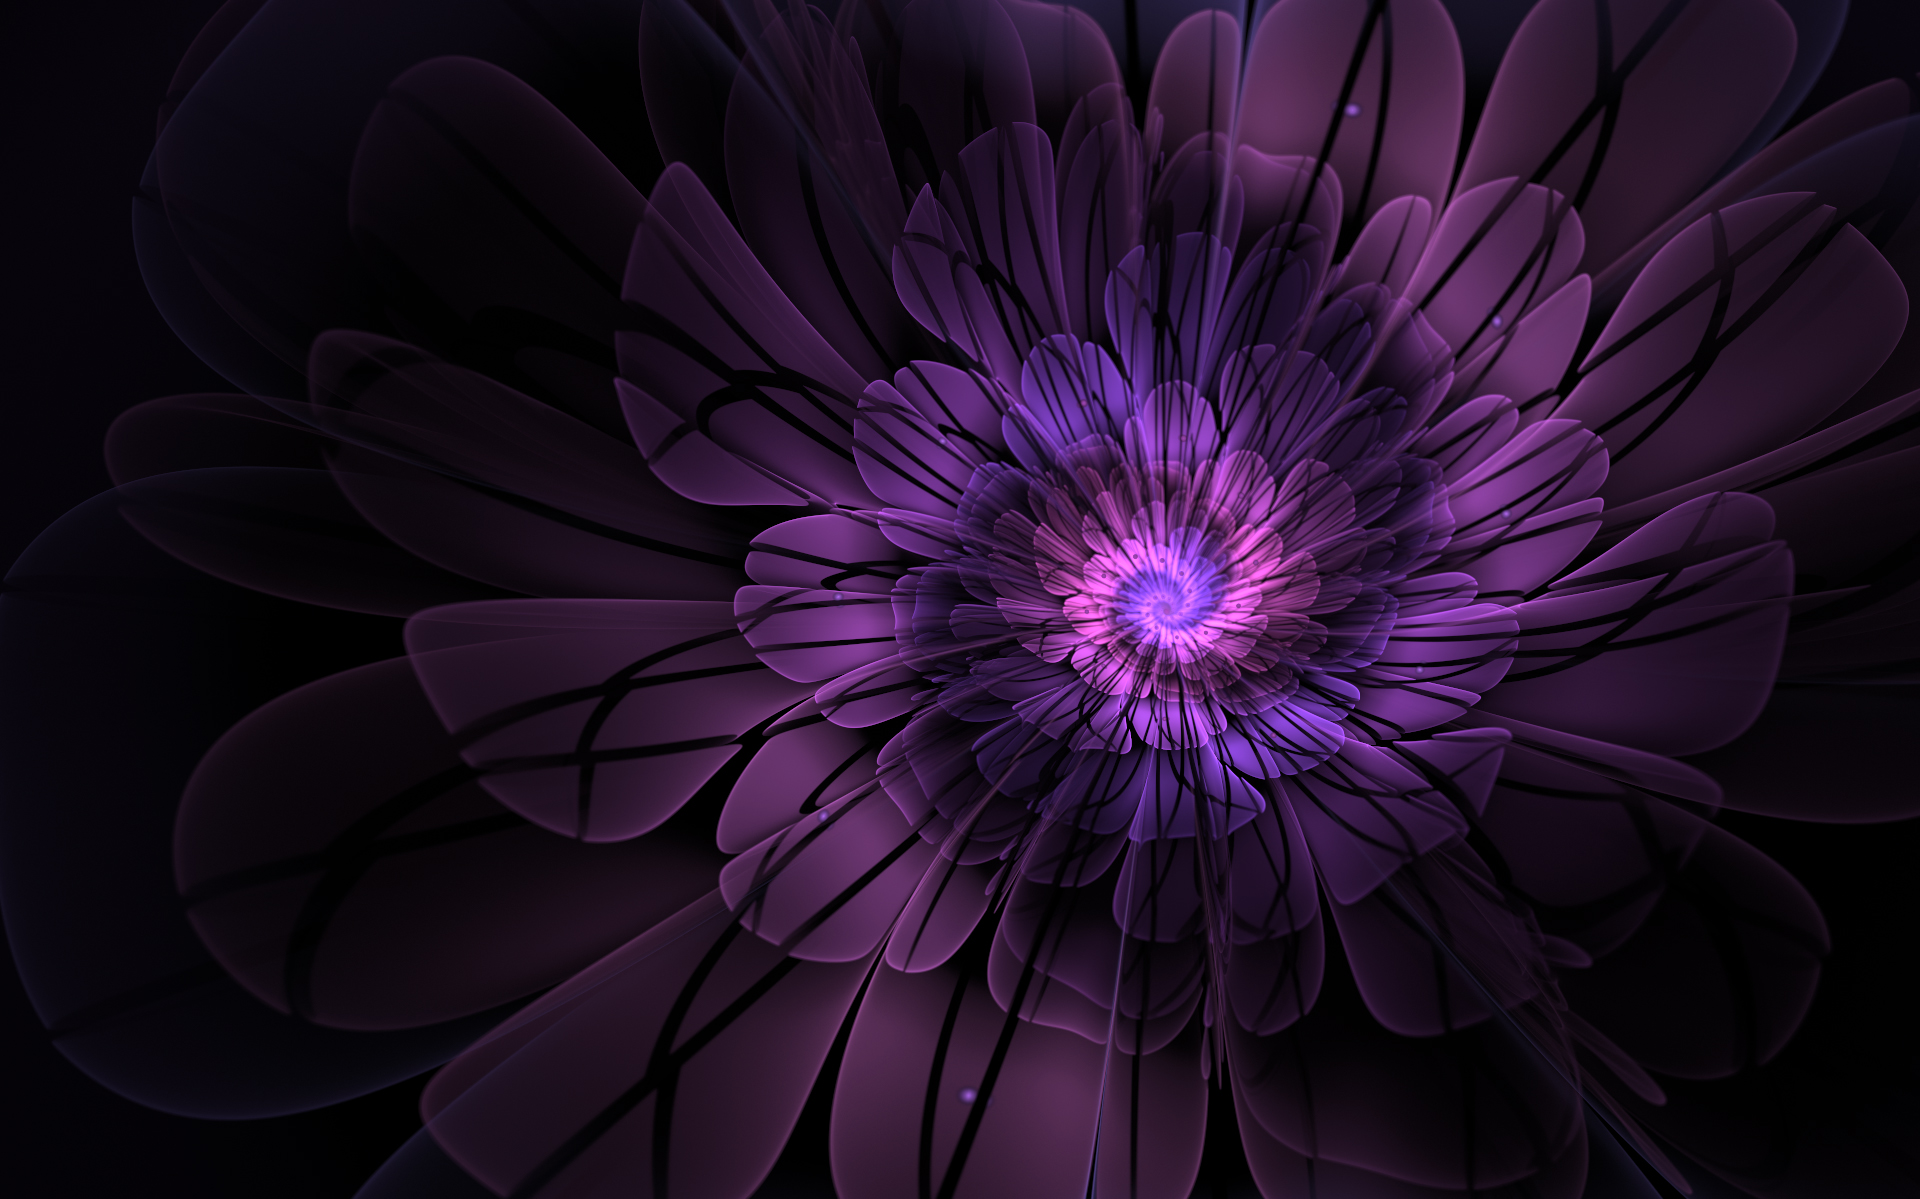 Purple Blossom by DarkMoon689 on DeviantArt